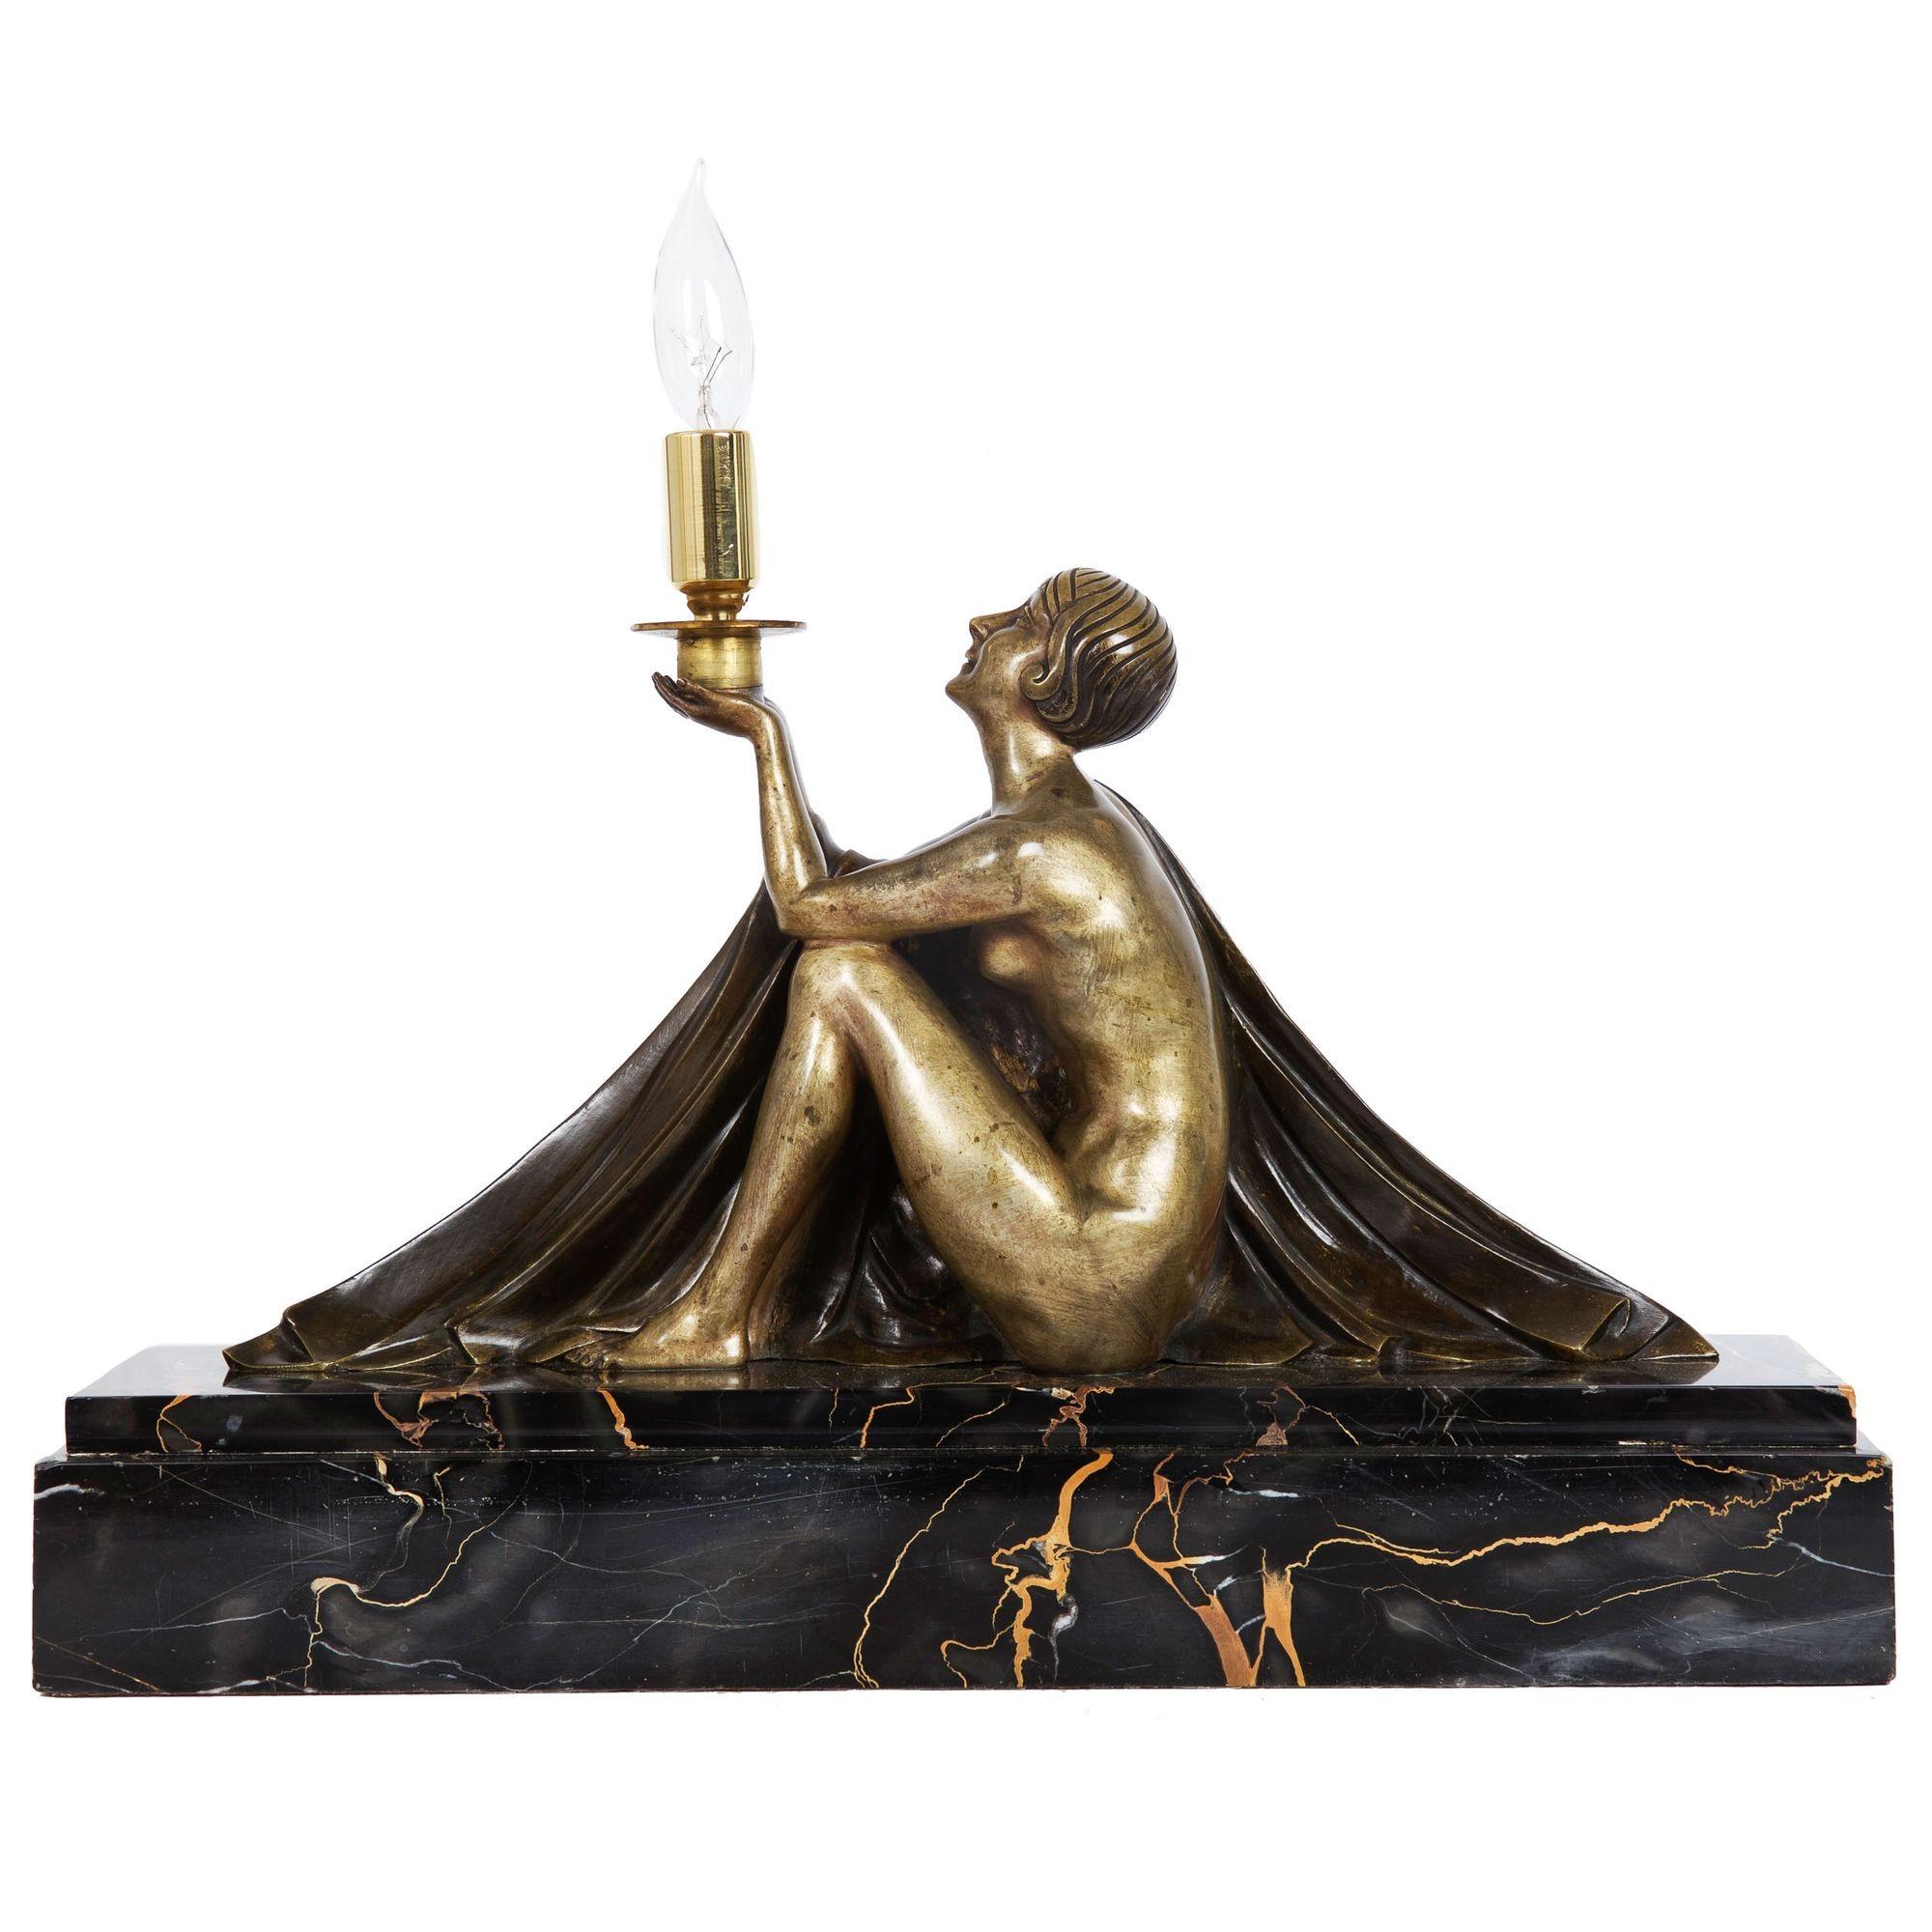 JEAN LORMIER
Französisch, 20. Jahrhundert

Figurale Lampe einer Frau, die eine Lampe hält

Figur aus patinierter Bronze, Kerzenständer aus Messing, Sockel aus Marmor  Verso signiert 